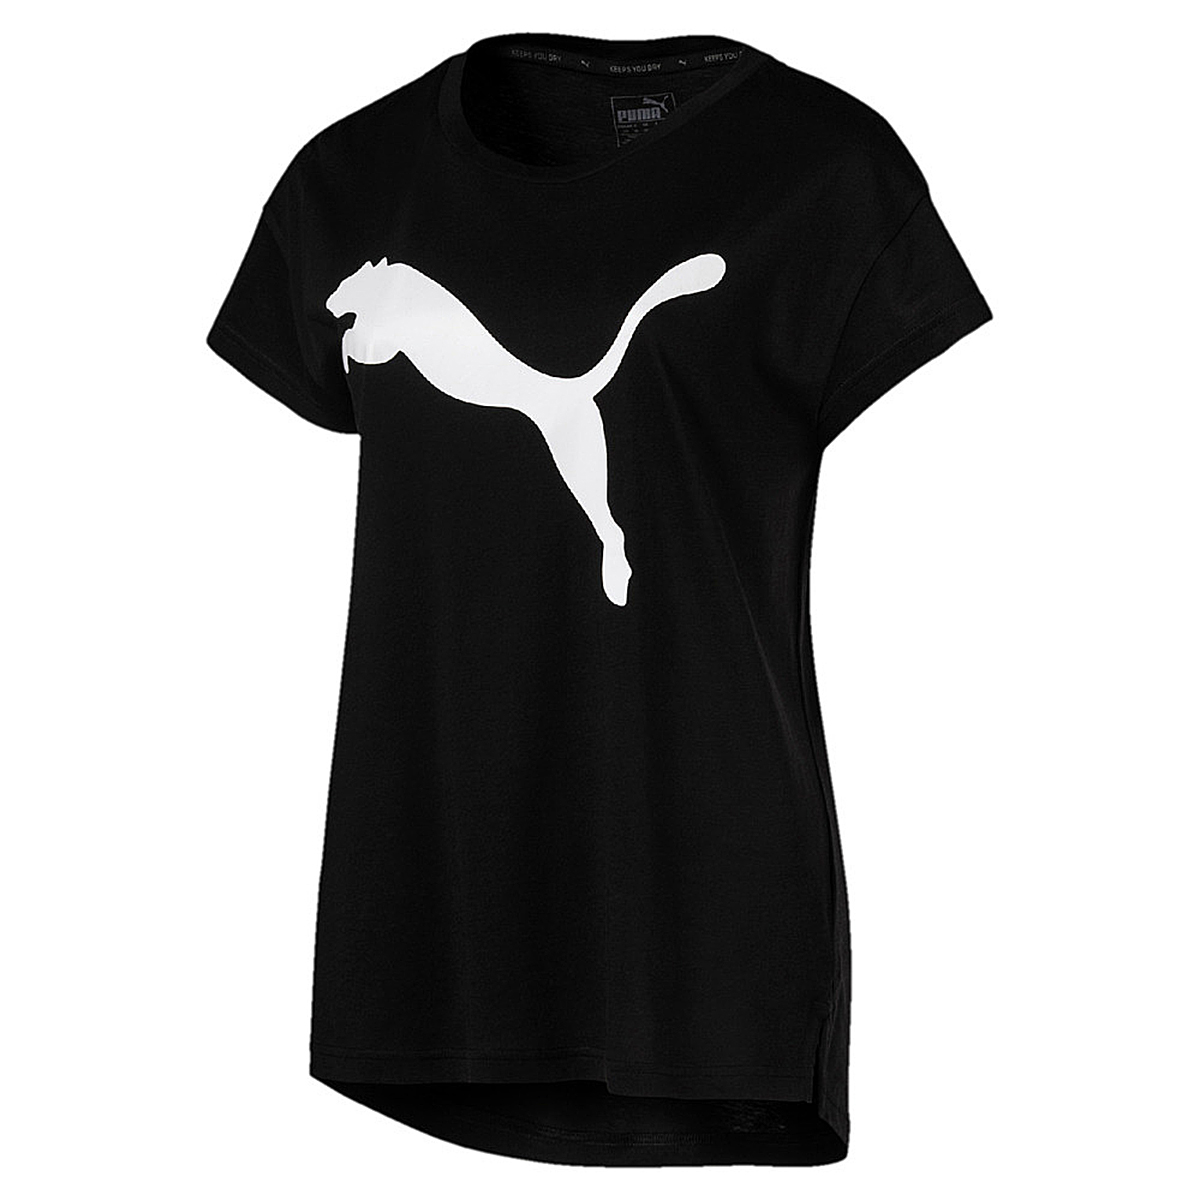 PUMA Damen Active Logo Tee DryCell T-Shirt schwarz 852006